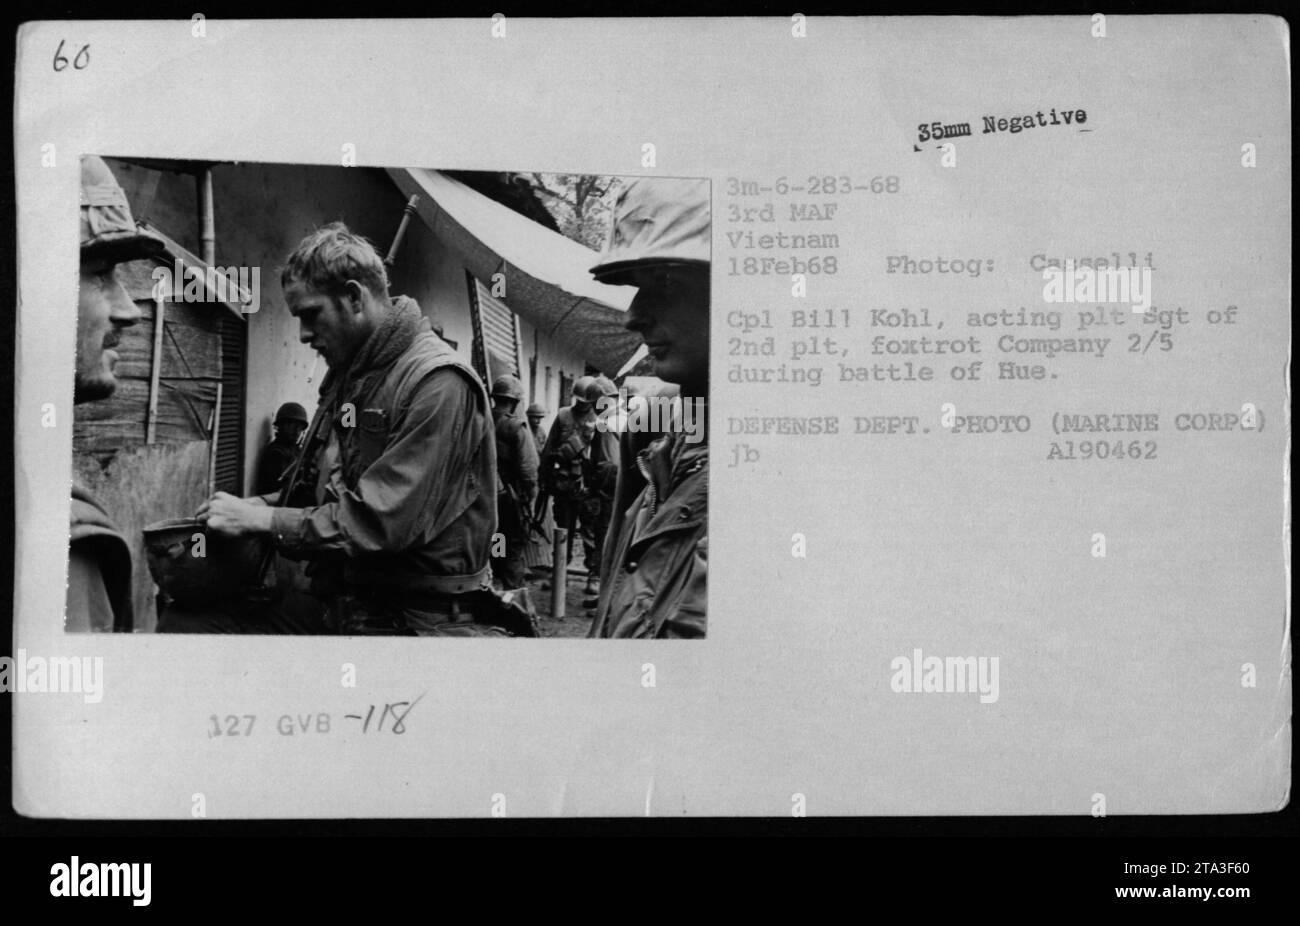 El Cpl de Marina Bill Kohl, Sgt de plt de 2nd plt, Foxtrot Company 2/5, es fotografiado durante la Batalla de Hue City el 18 de febrero de 1968. Esta imagen captura la intensidad de las operaciones de combate llevadas a cabo por la 3ª Fuerza Anfibia de la Marina (3ª MAF) en Vietnam. (DEPARTAMENTO DE DEFENSA. FOTO, CUERPO DE MARINES 📷Cpl Casselli, 35mm negativo) Foto de stock